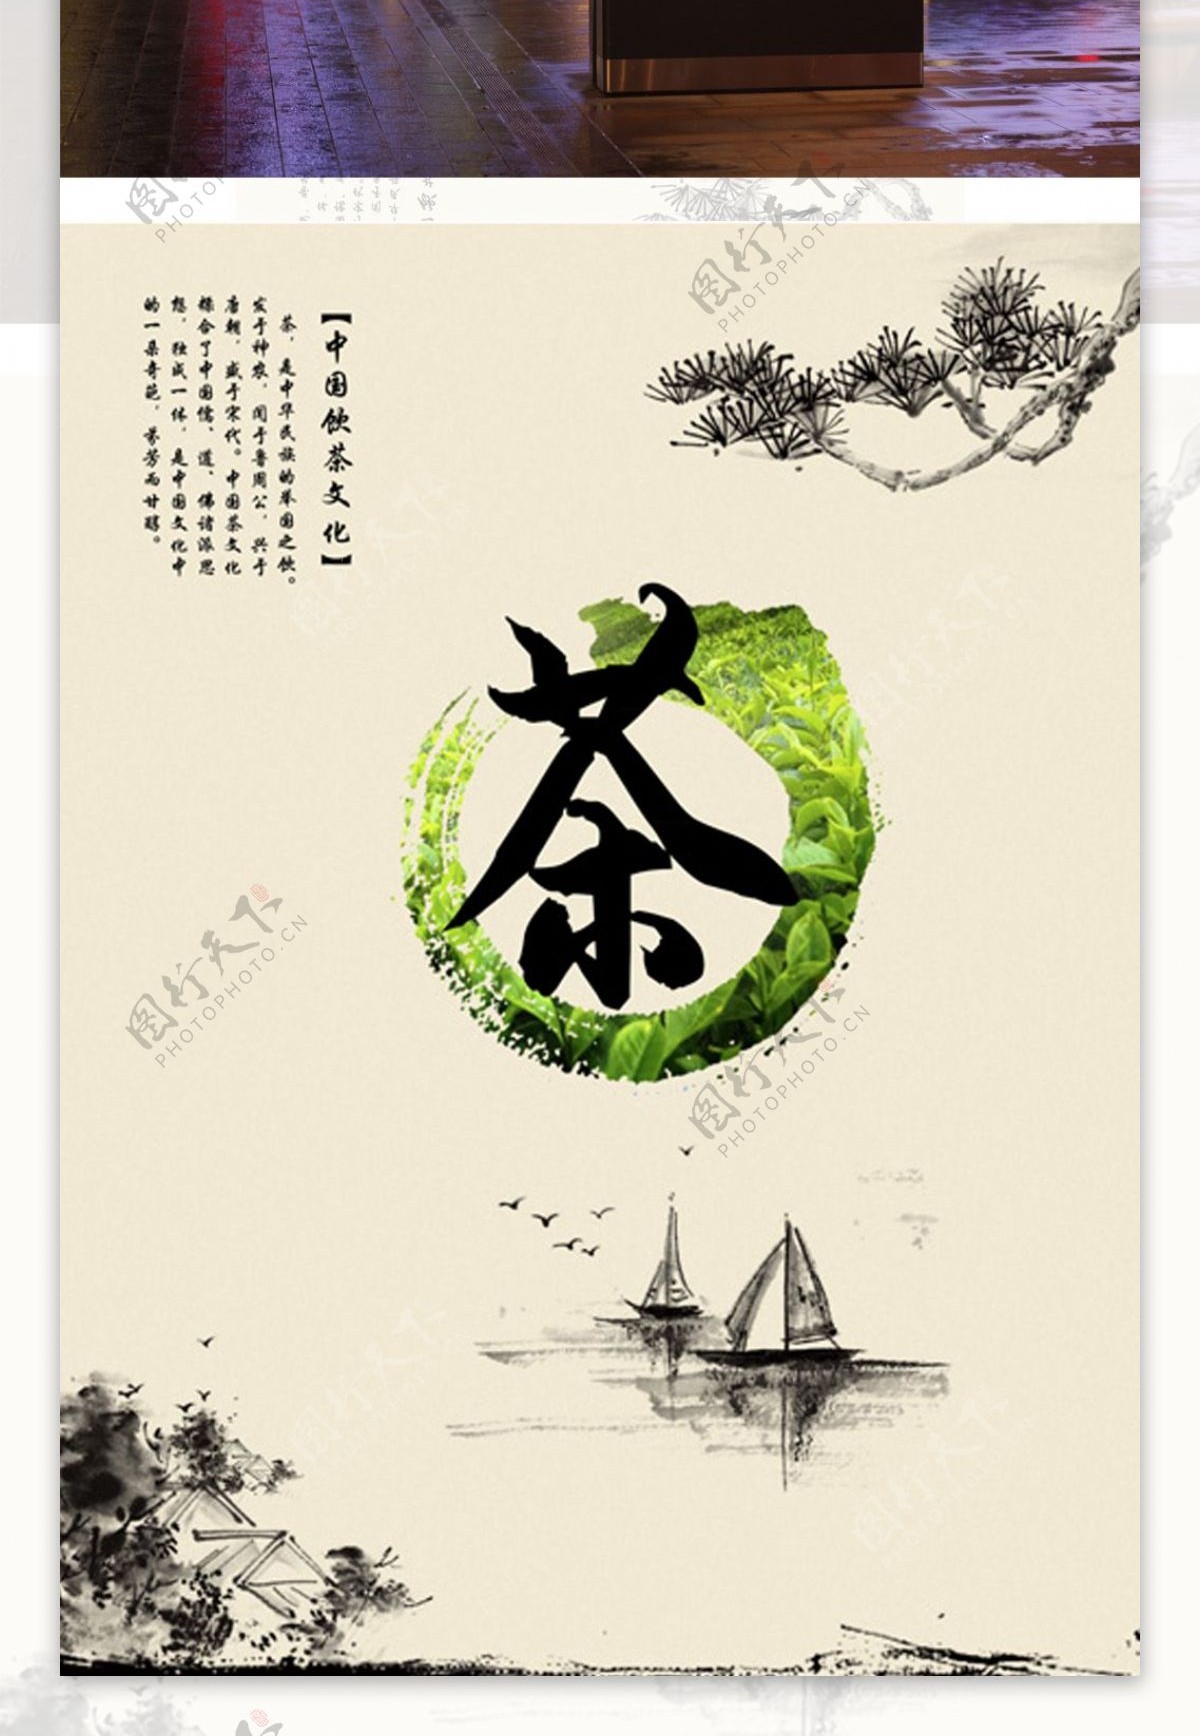 茶文化中国风海报